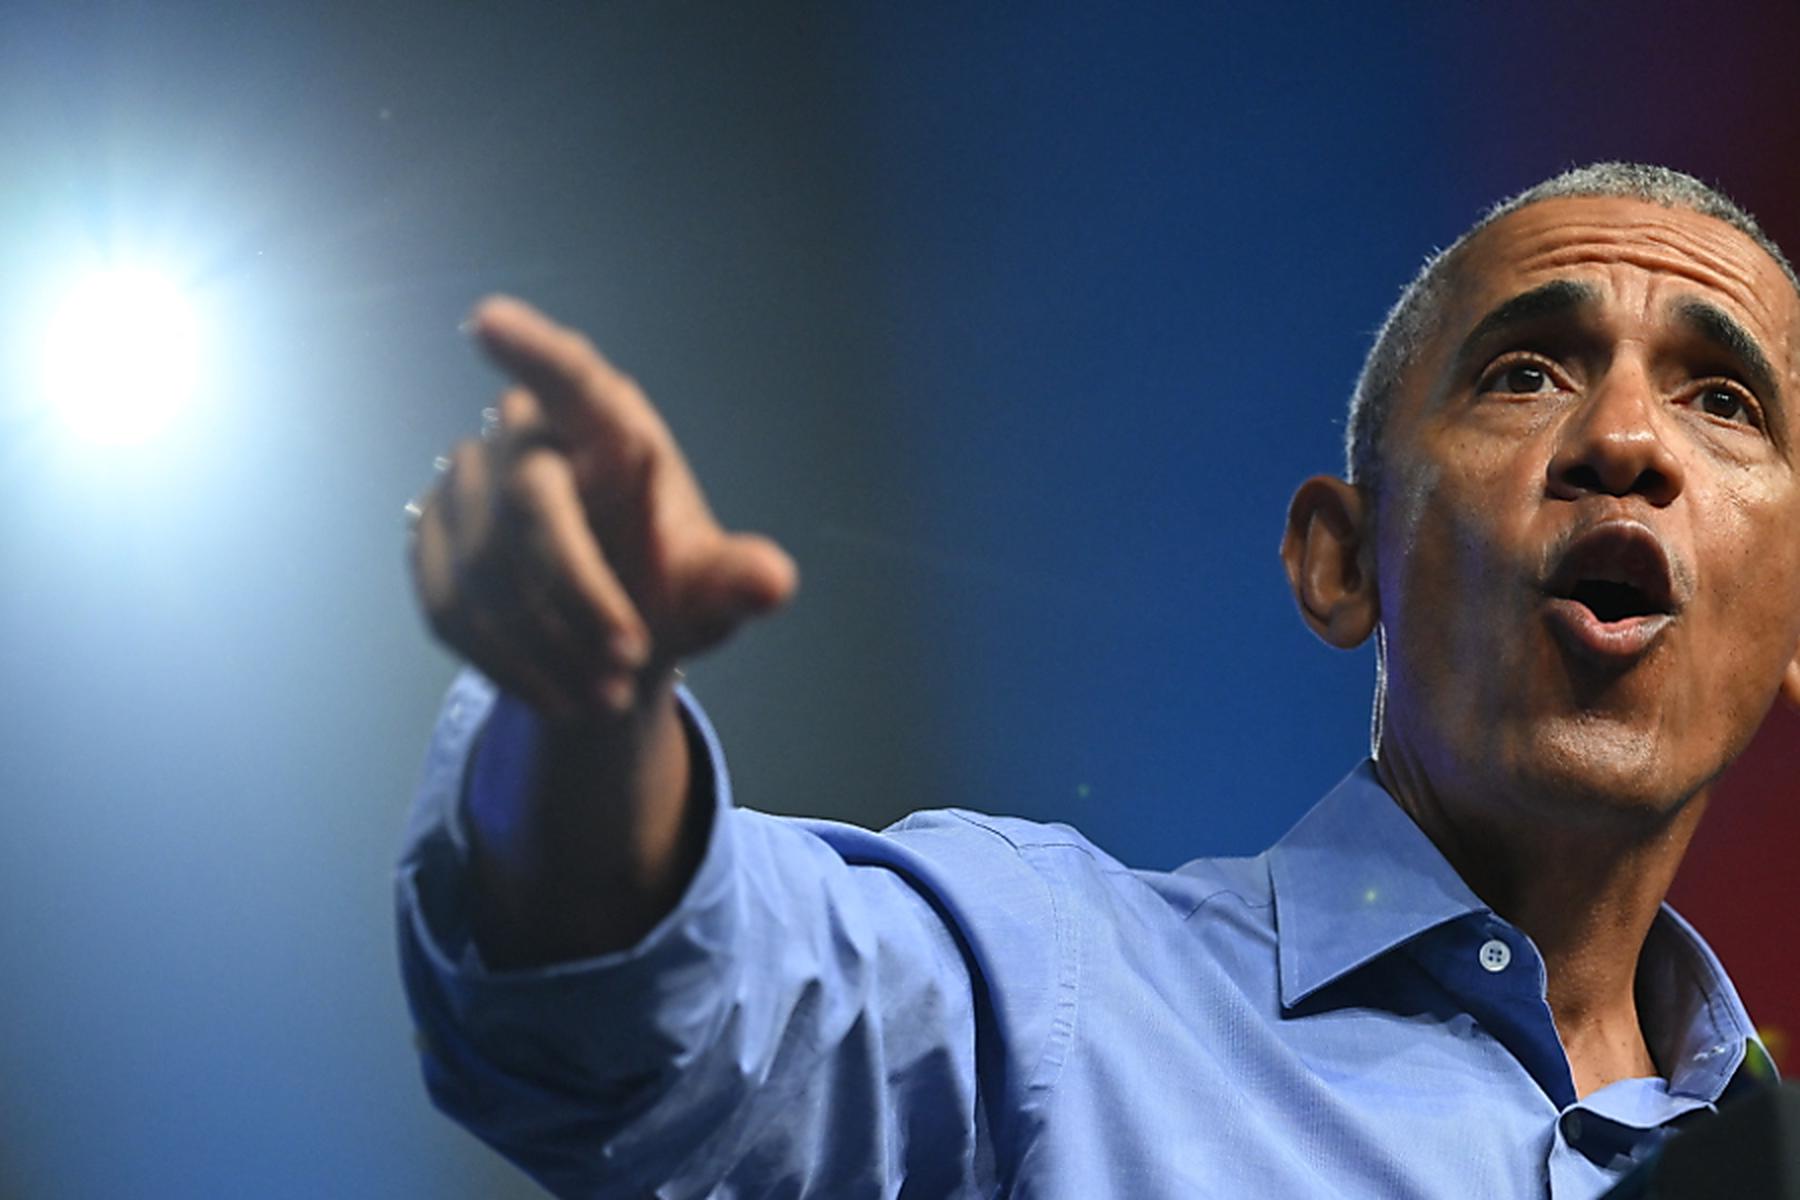 Washington: USA: Obama unterstützt Harris als Präsidentschaftskandidatin